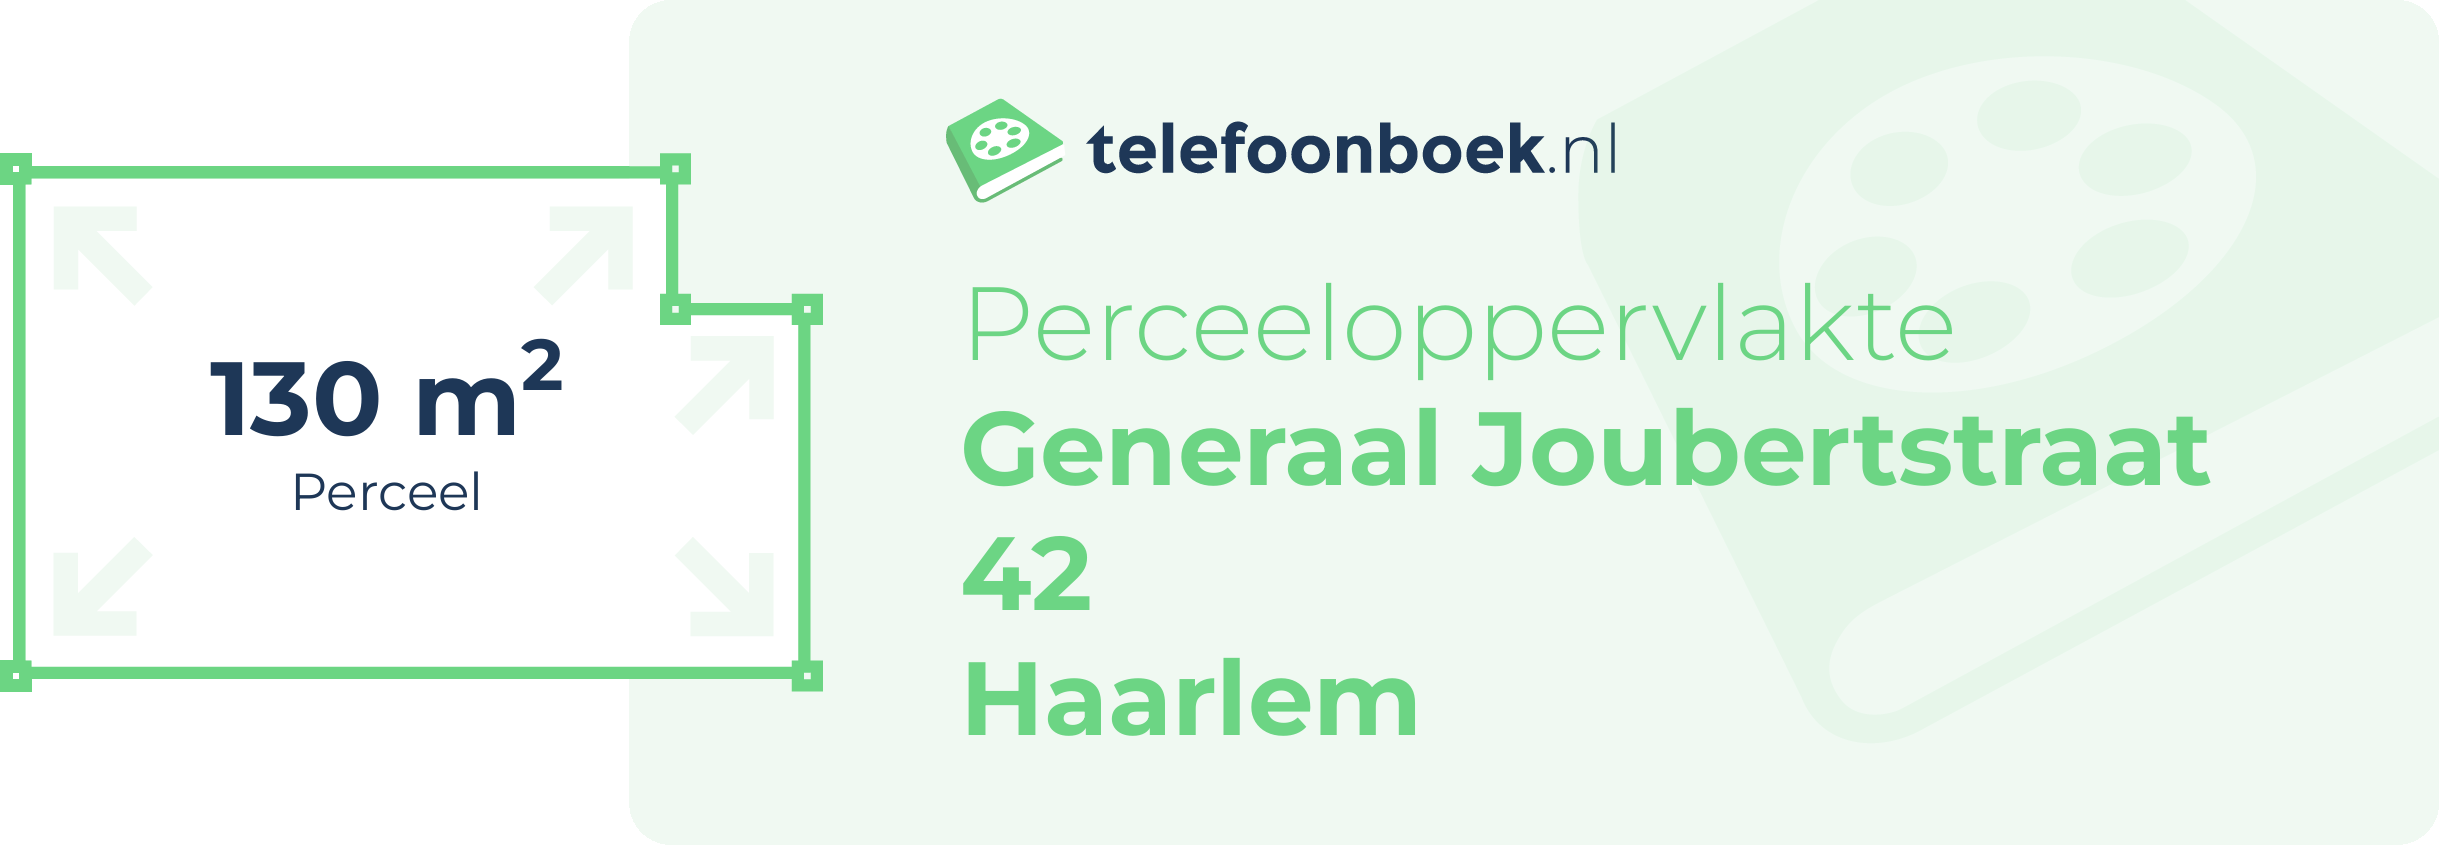 Perceeloppervlakte Generaal Joubertstraat 42 Haarlem